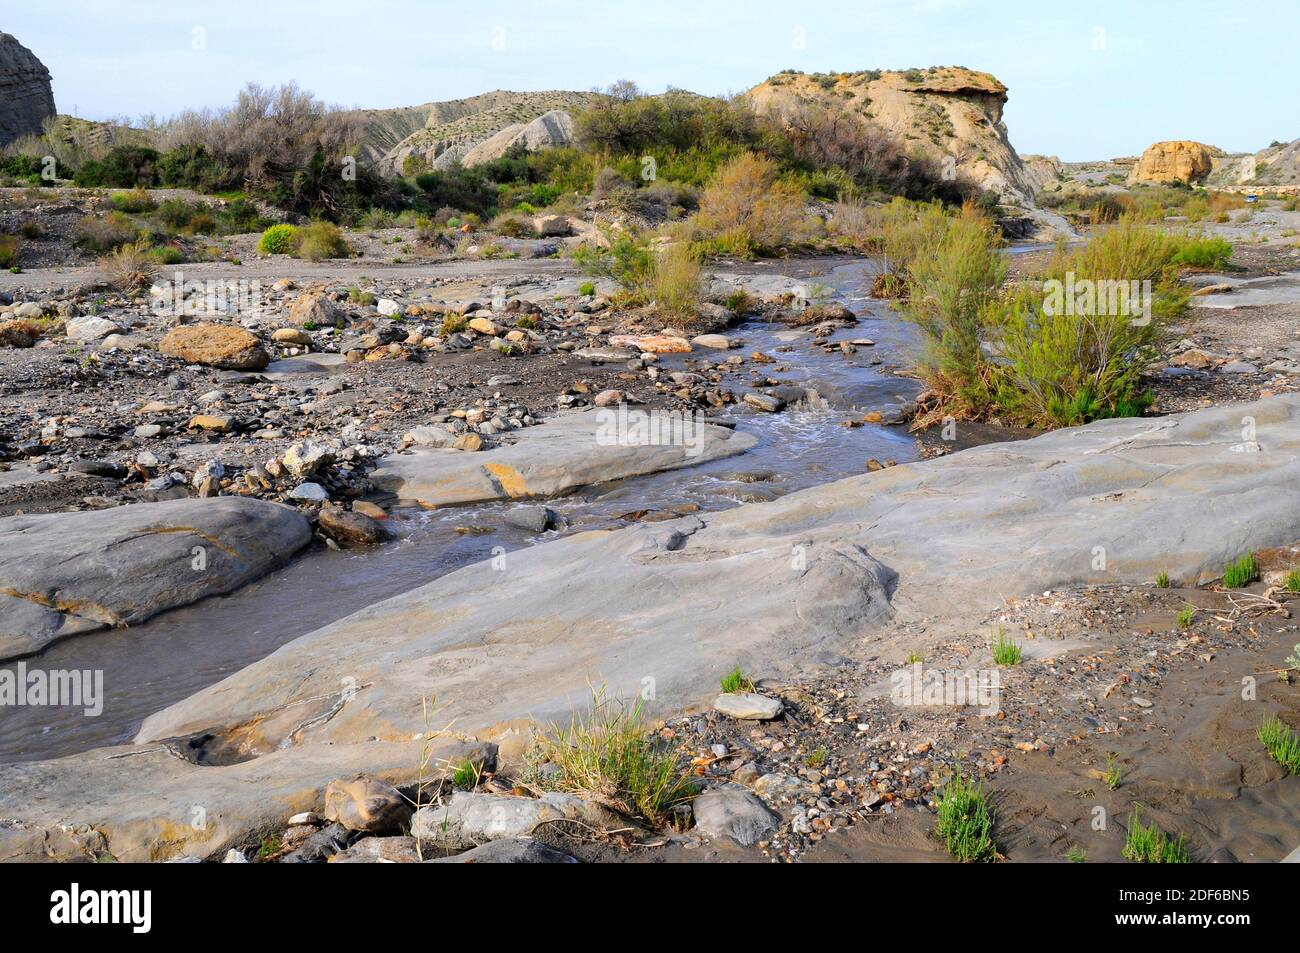 Wadi oder rambla ist ein intermittierender Strom, der charakteristisch für arides Klima ist. Dieses Foto wurde in Desierto de Tabernas, Almeria, Andalusien, Spanien aufgenommen. Stockfoto